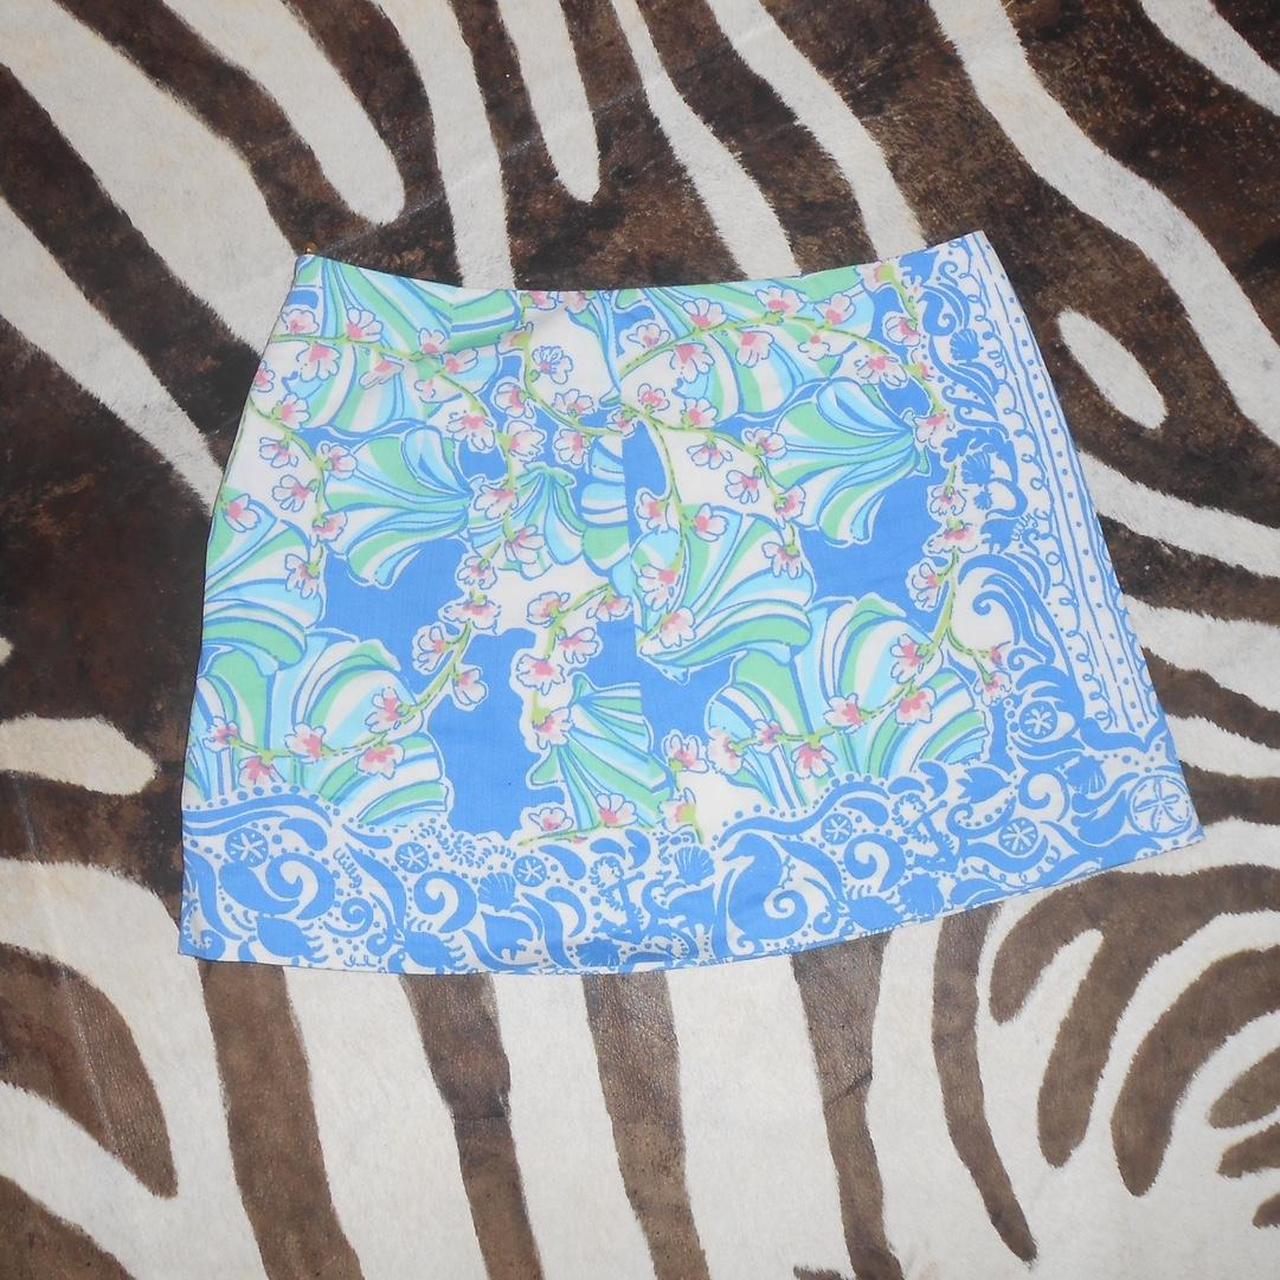 Lily Pulitzer mini skirt Pattern, super Hamptons in... - Depop